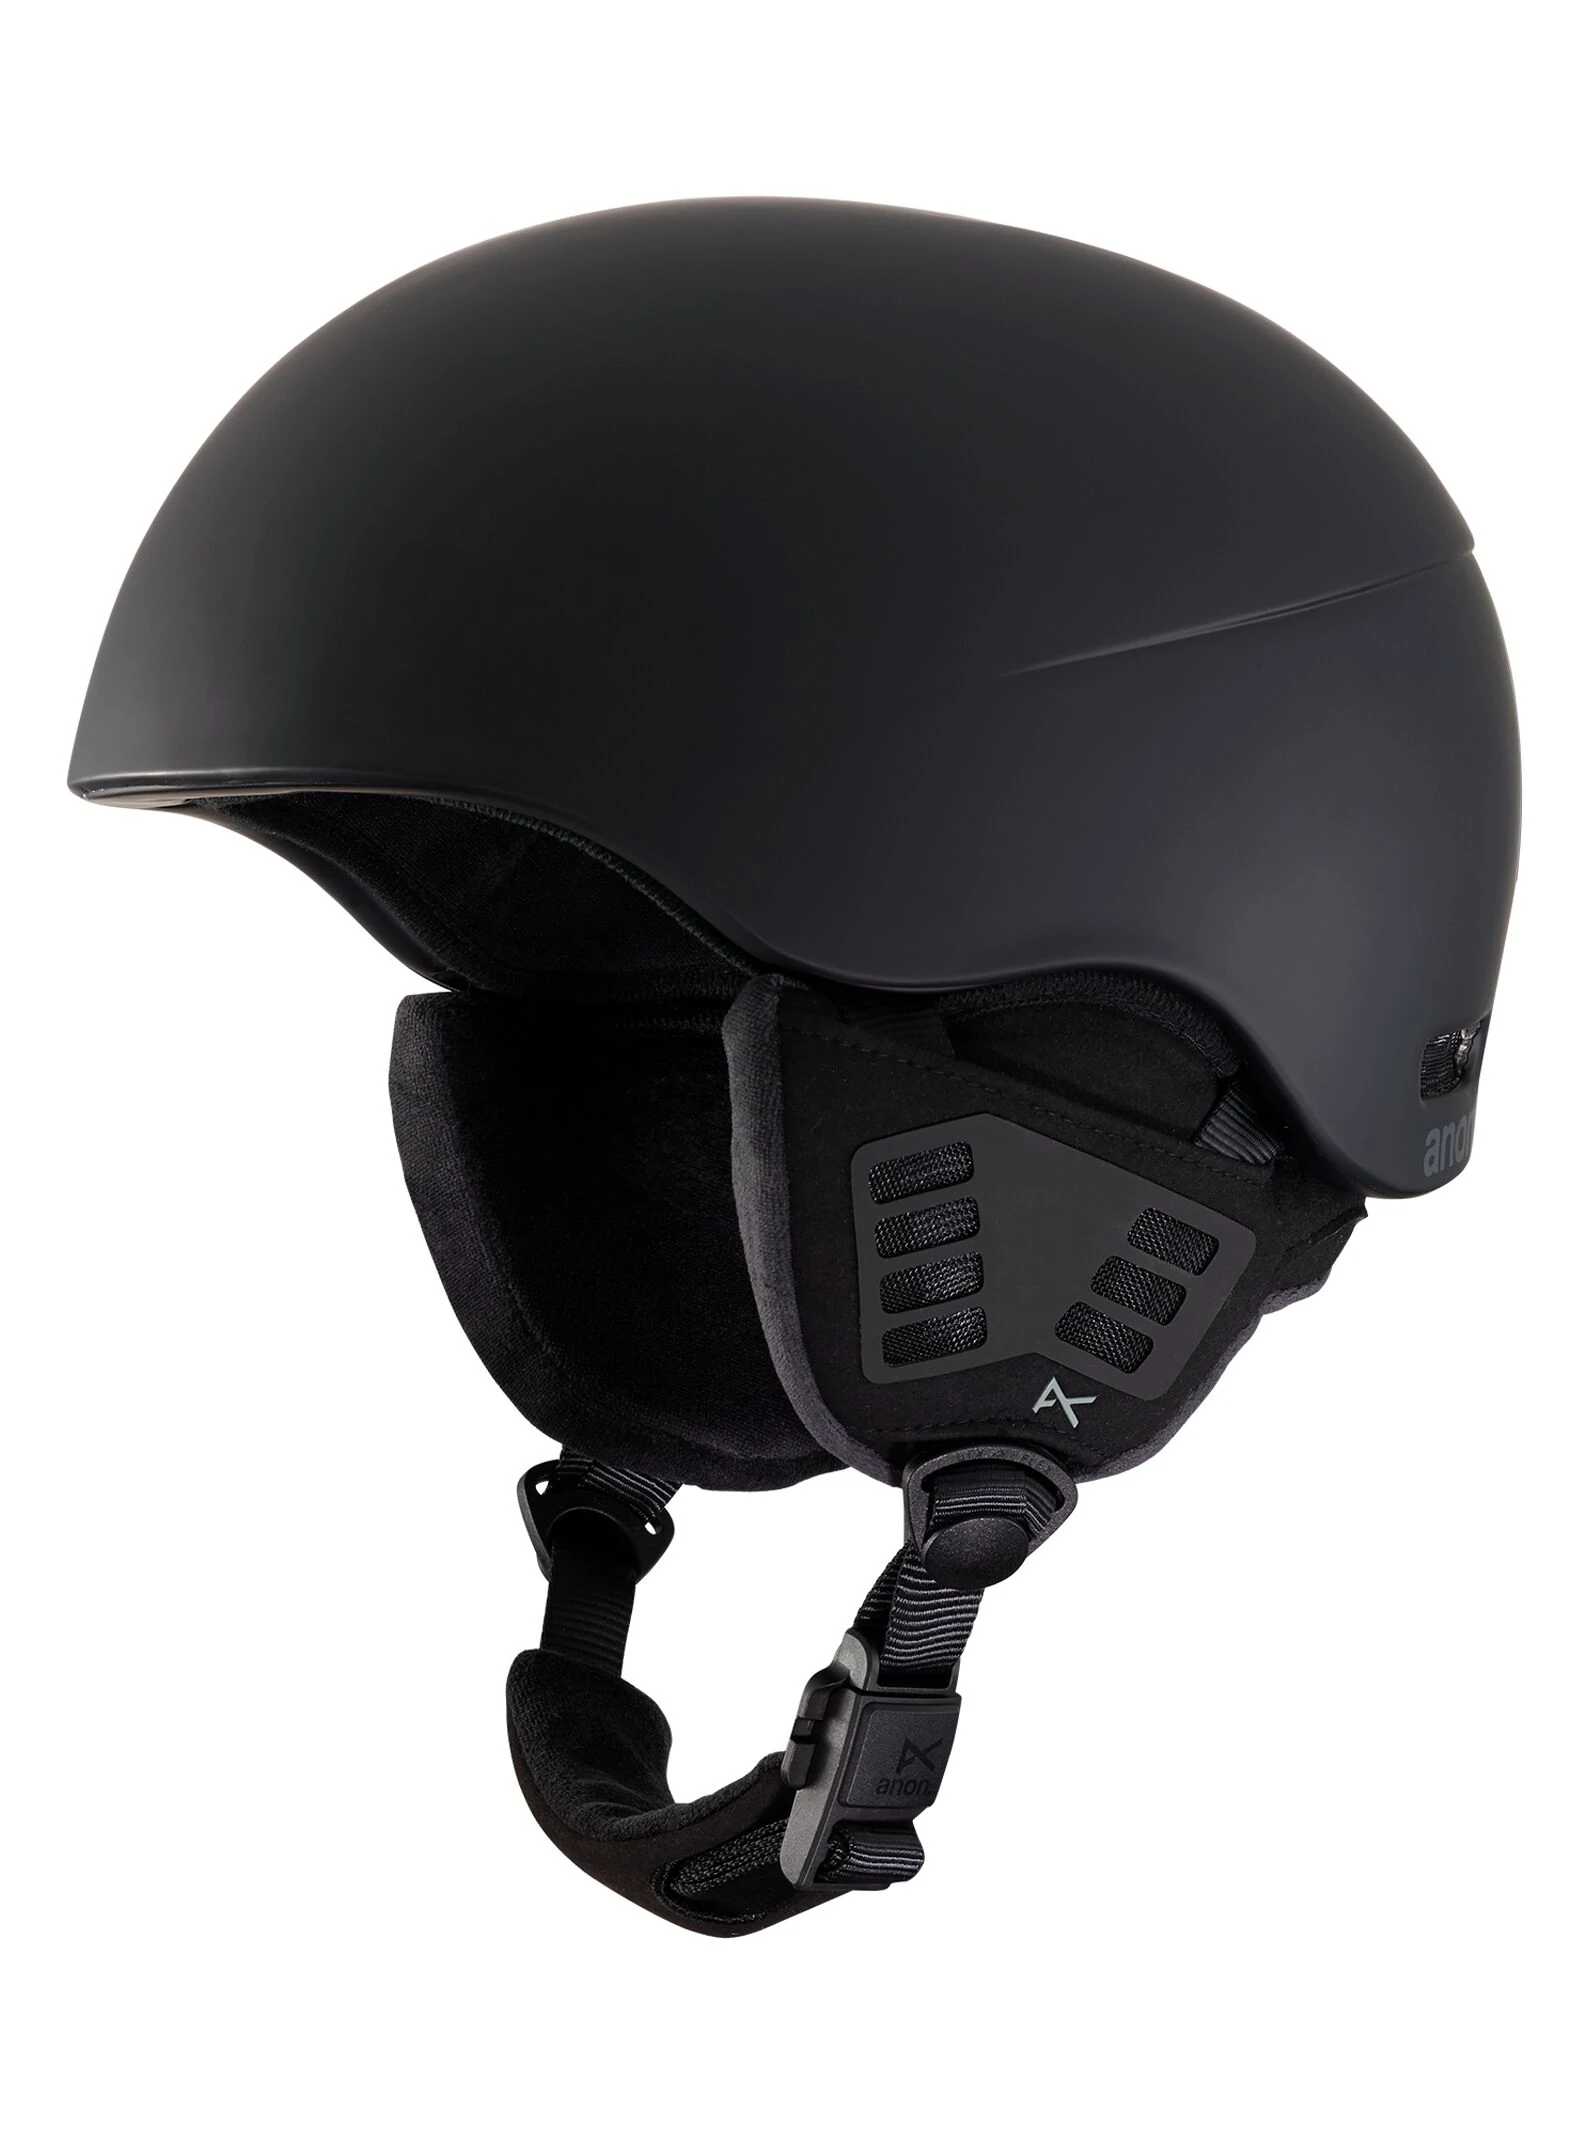 Anon Helo 2.0 helm black